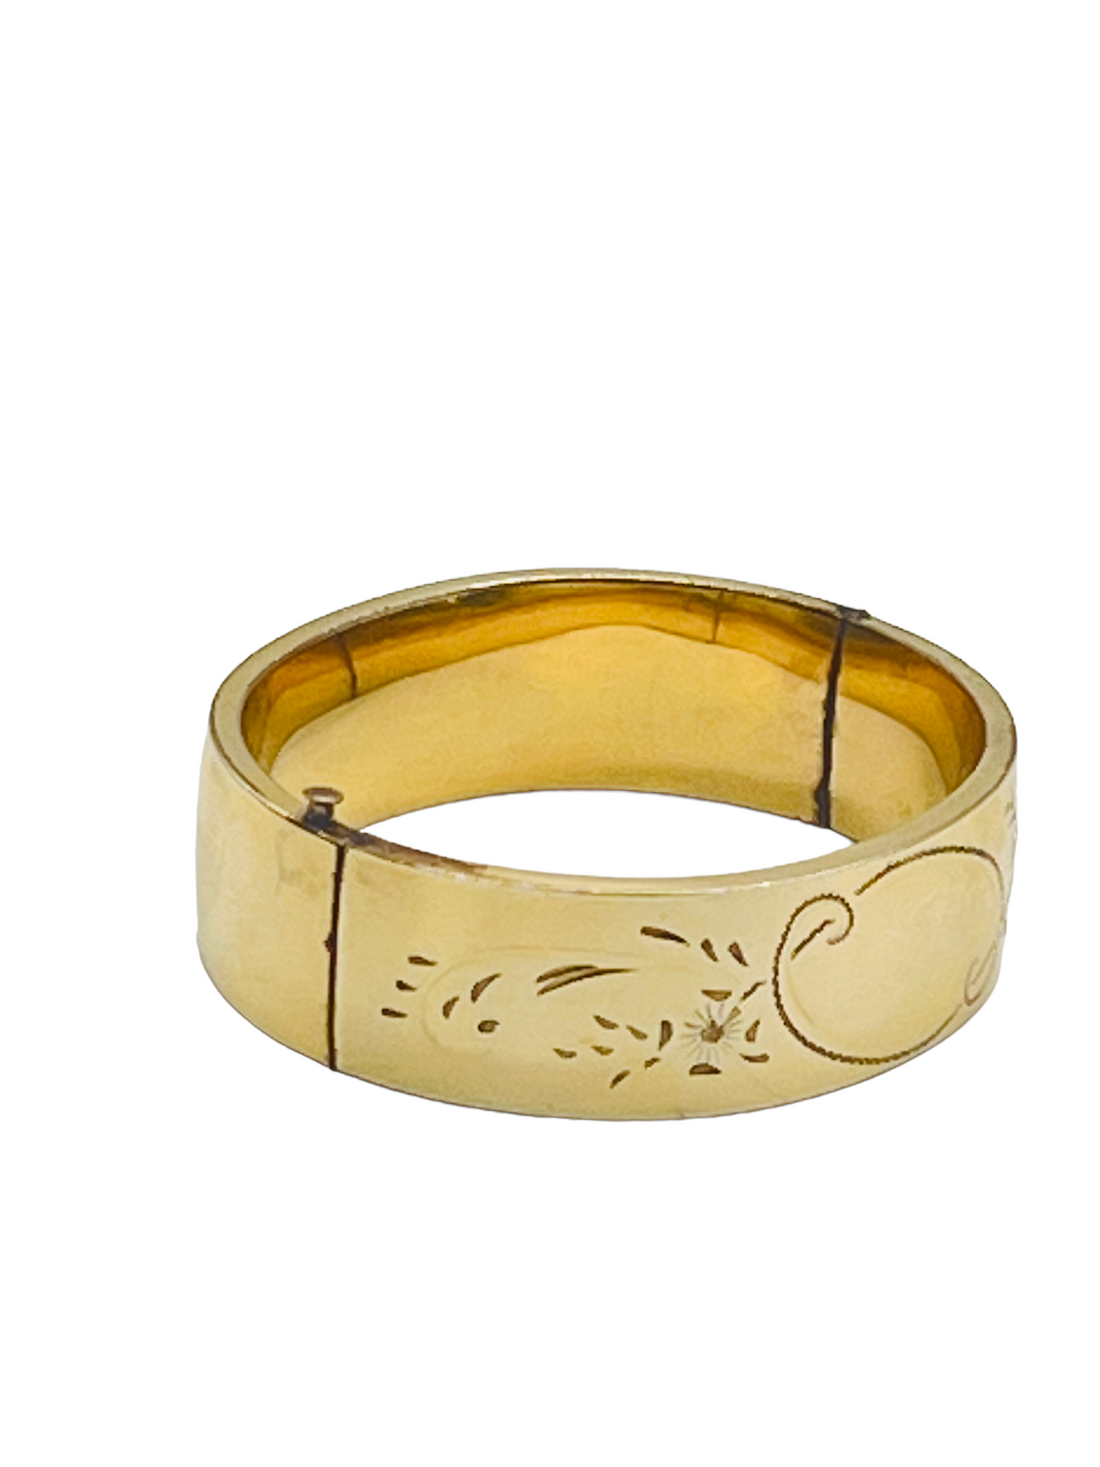 Antique Gold Filled Etched Floral Hinge Bangle Bracelet Media.